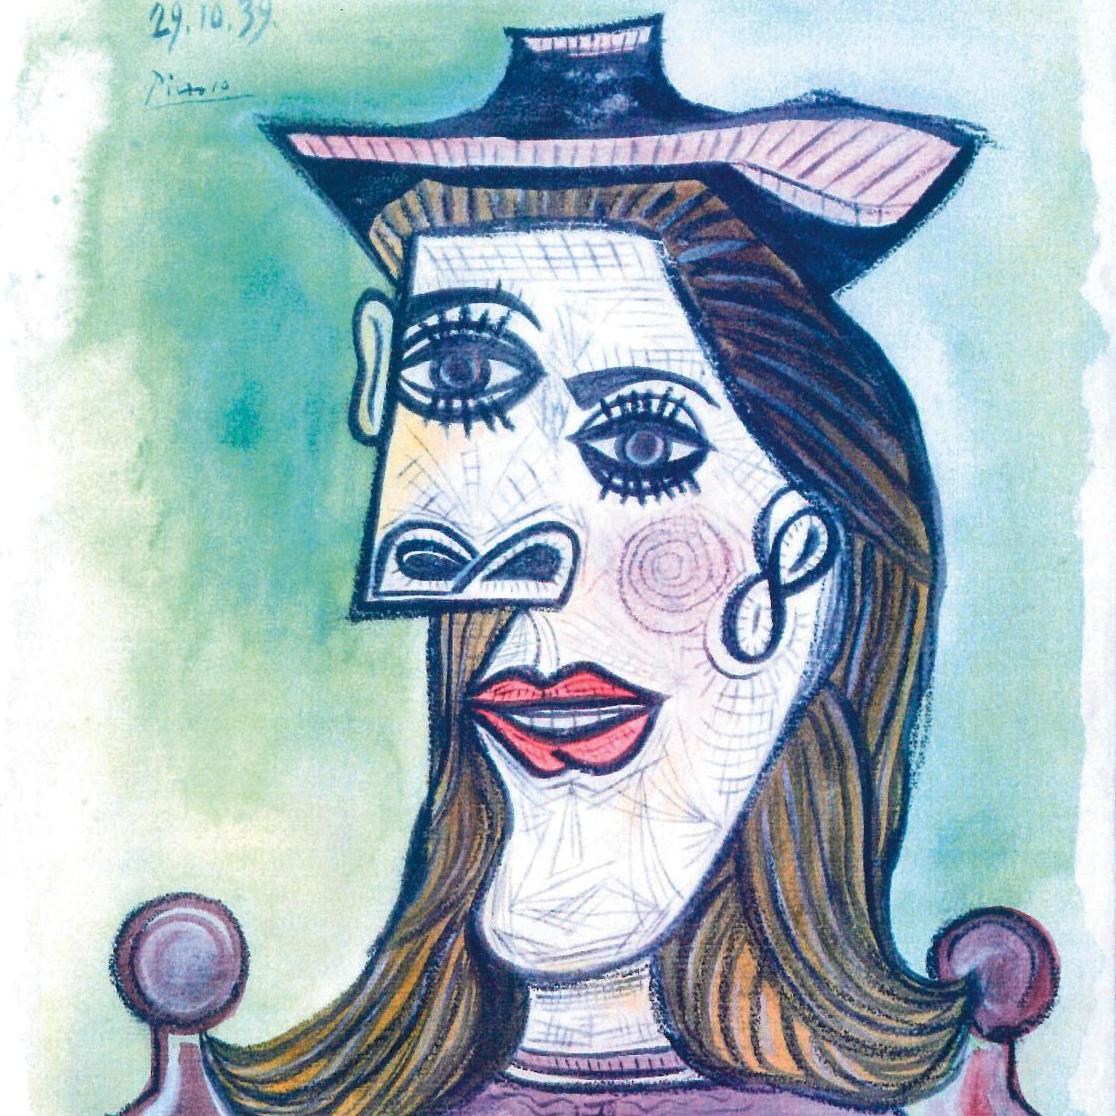 Picasso, un portrait contesté - Droit et finance